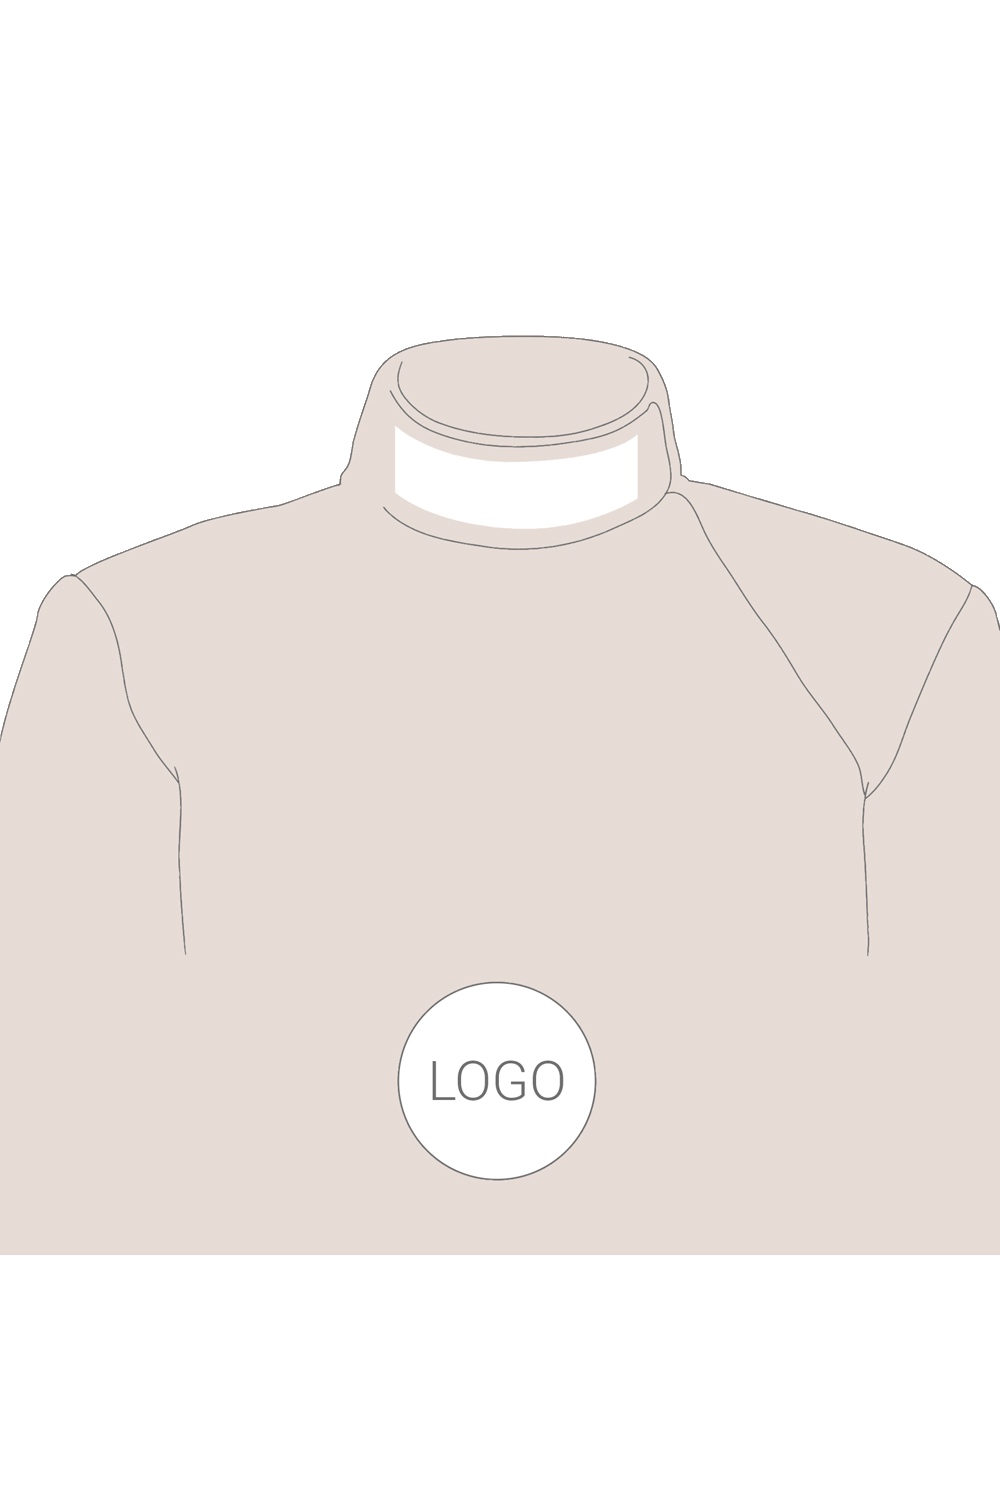 Printing of Sponsorship Logos on Electric Jacket